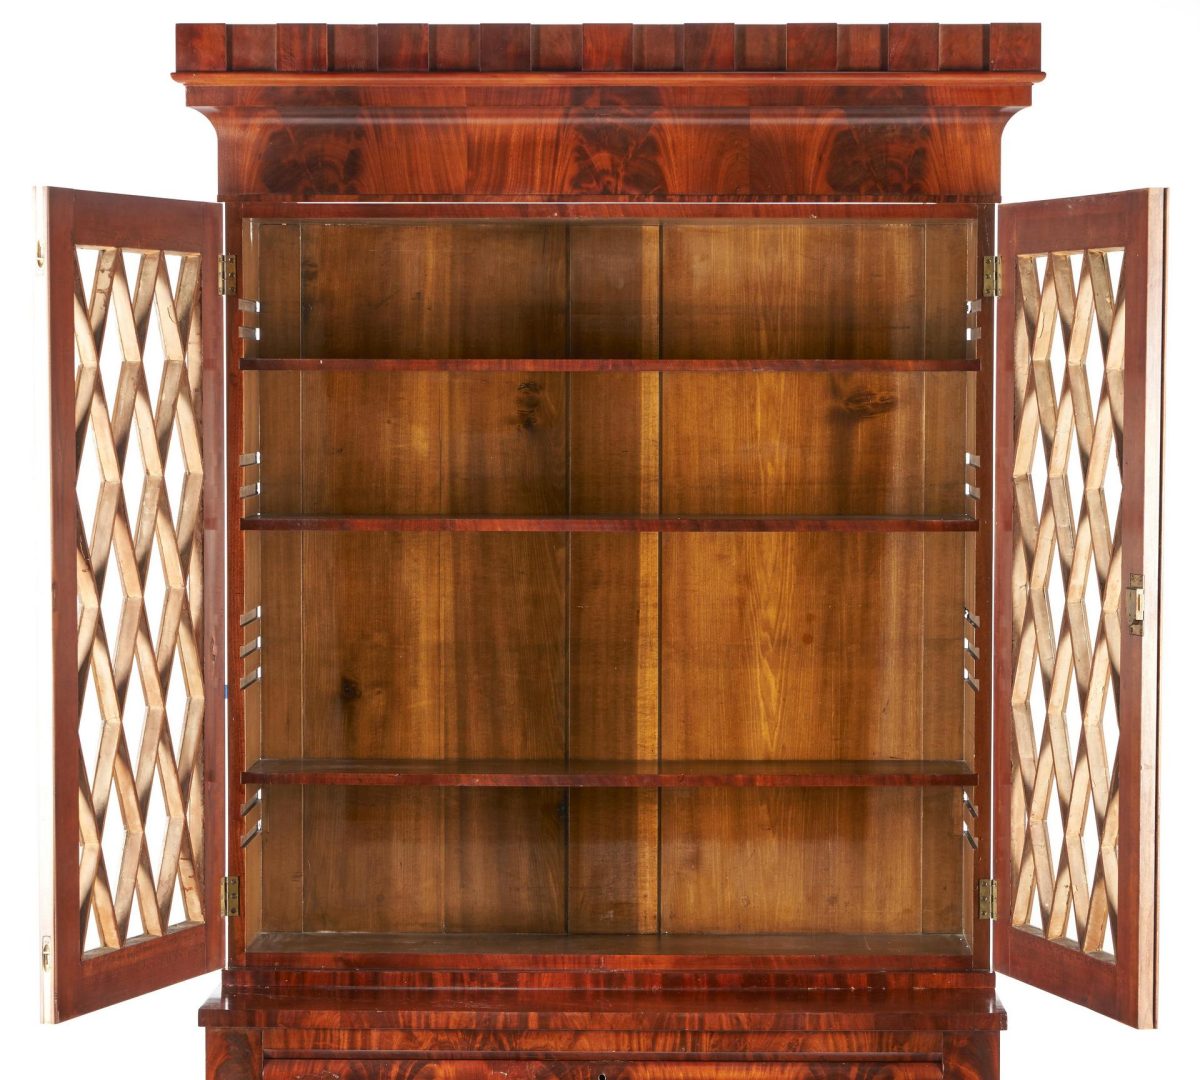 Lot 241: Kentucky Classical Mahogany Secretary Bookcase